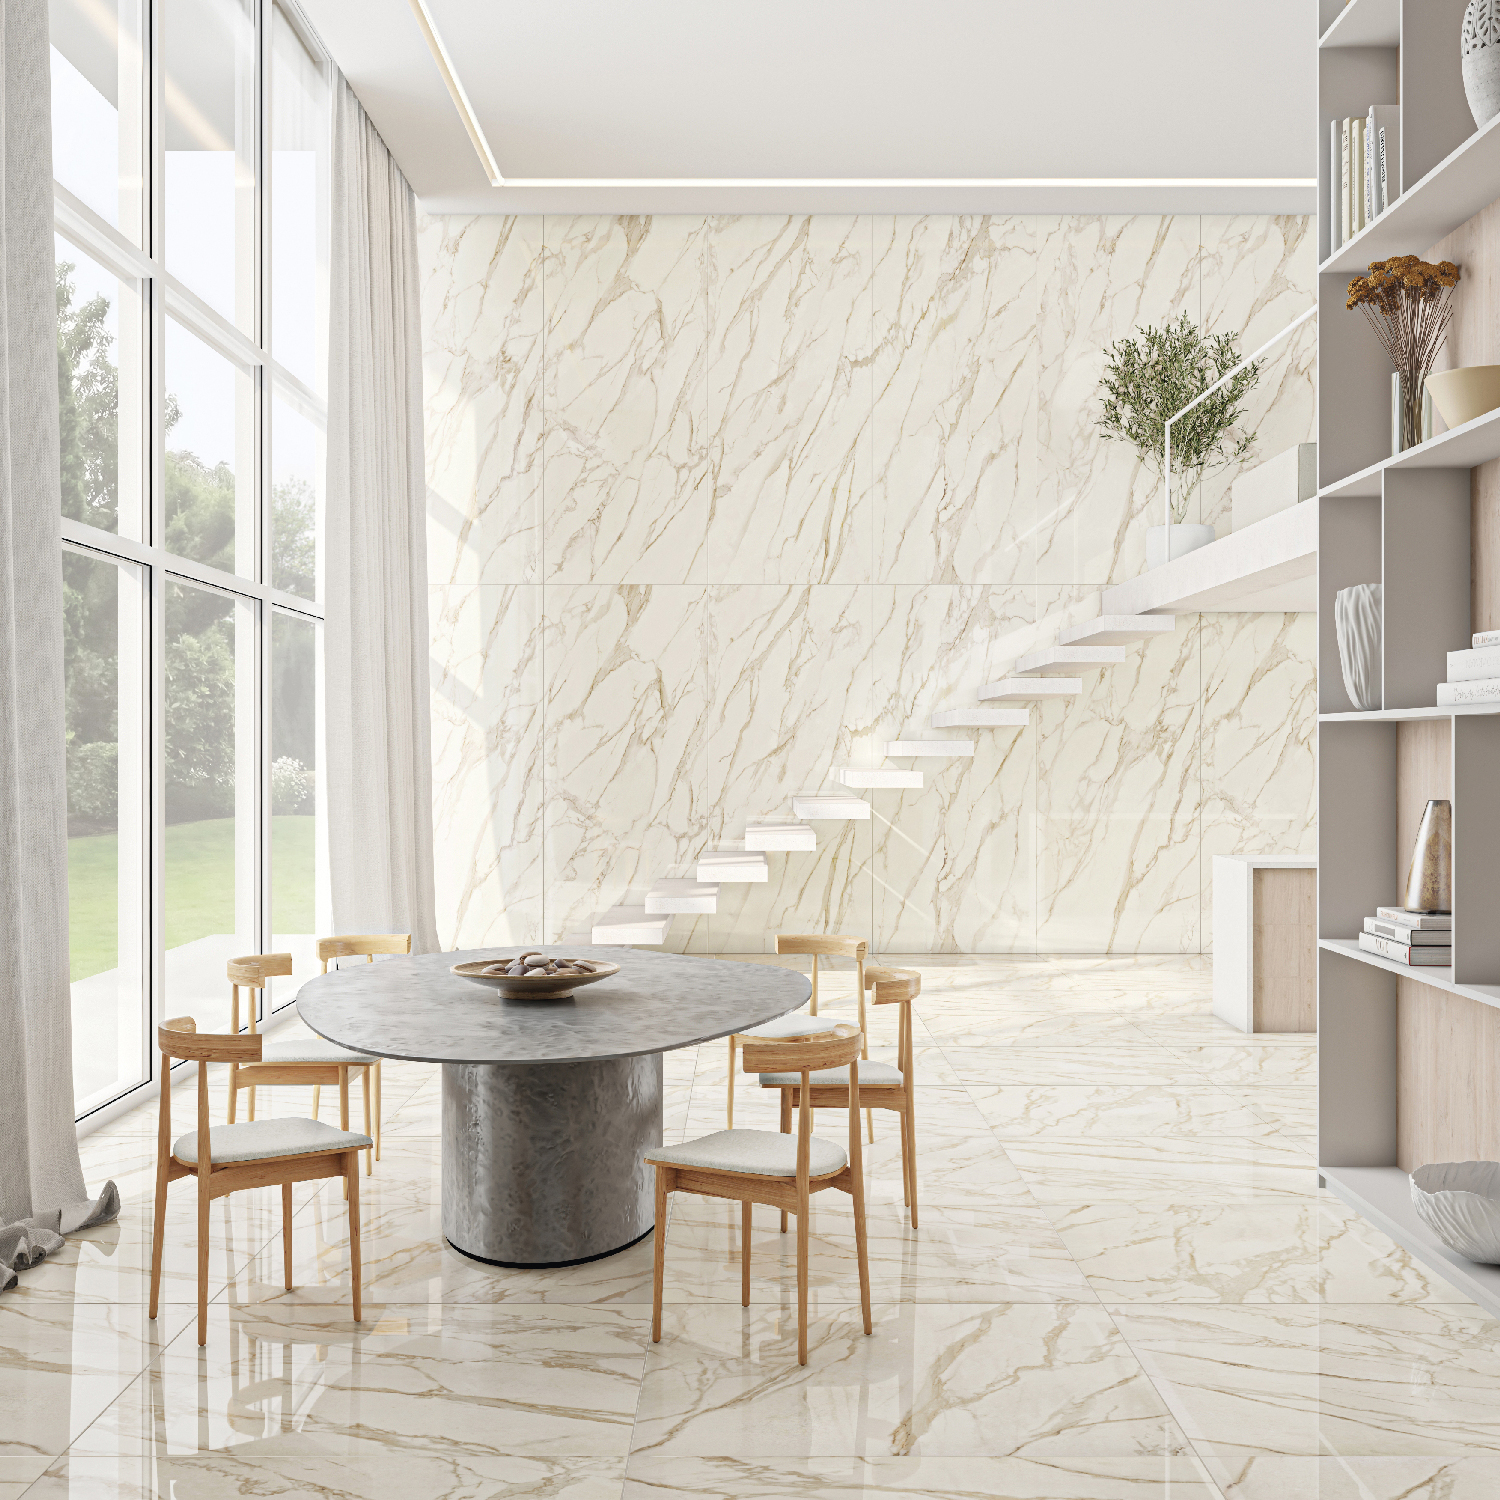 Os grandes painéis de mármore nas salas também trazem sofisticação e ajudam a destacar uma ou mais paredes do ambiente